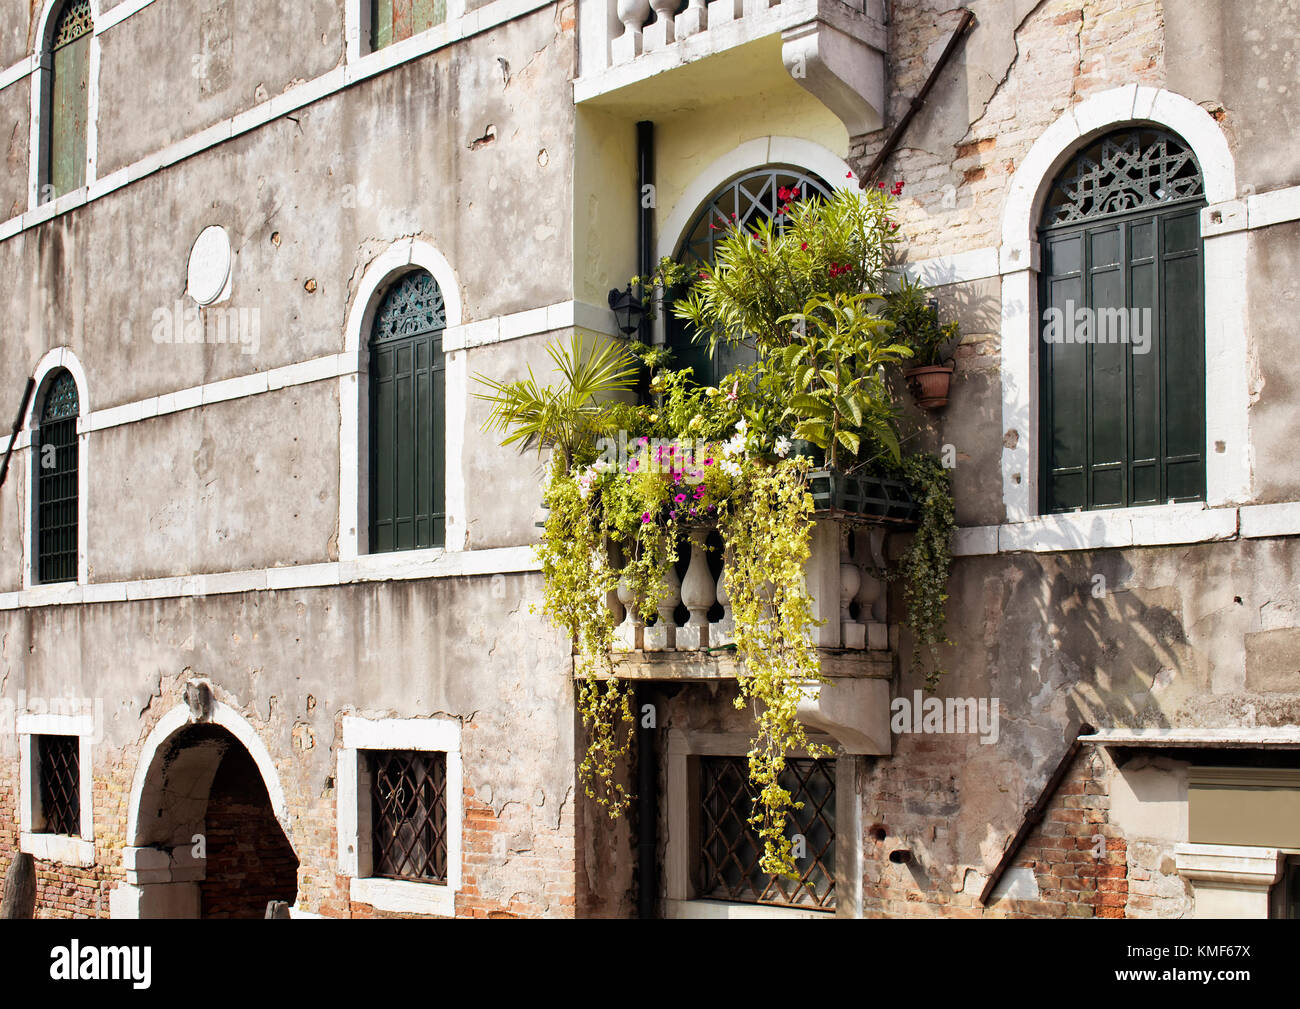 Molti fiori e piante in balcone della vecchia, storico edificio tipico di Venezia. immagine mostra lo stile architettonico e lo stile di vita della regione. Foto Stock